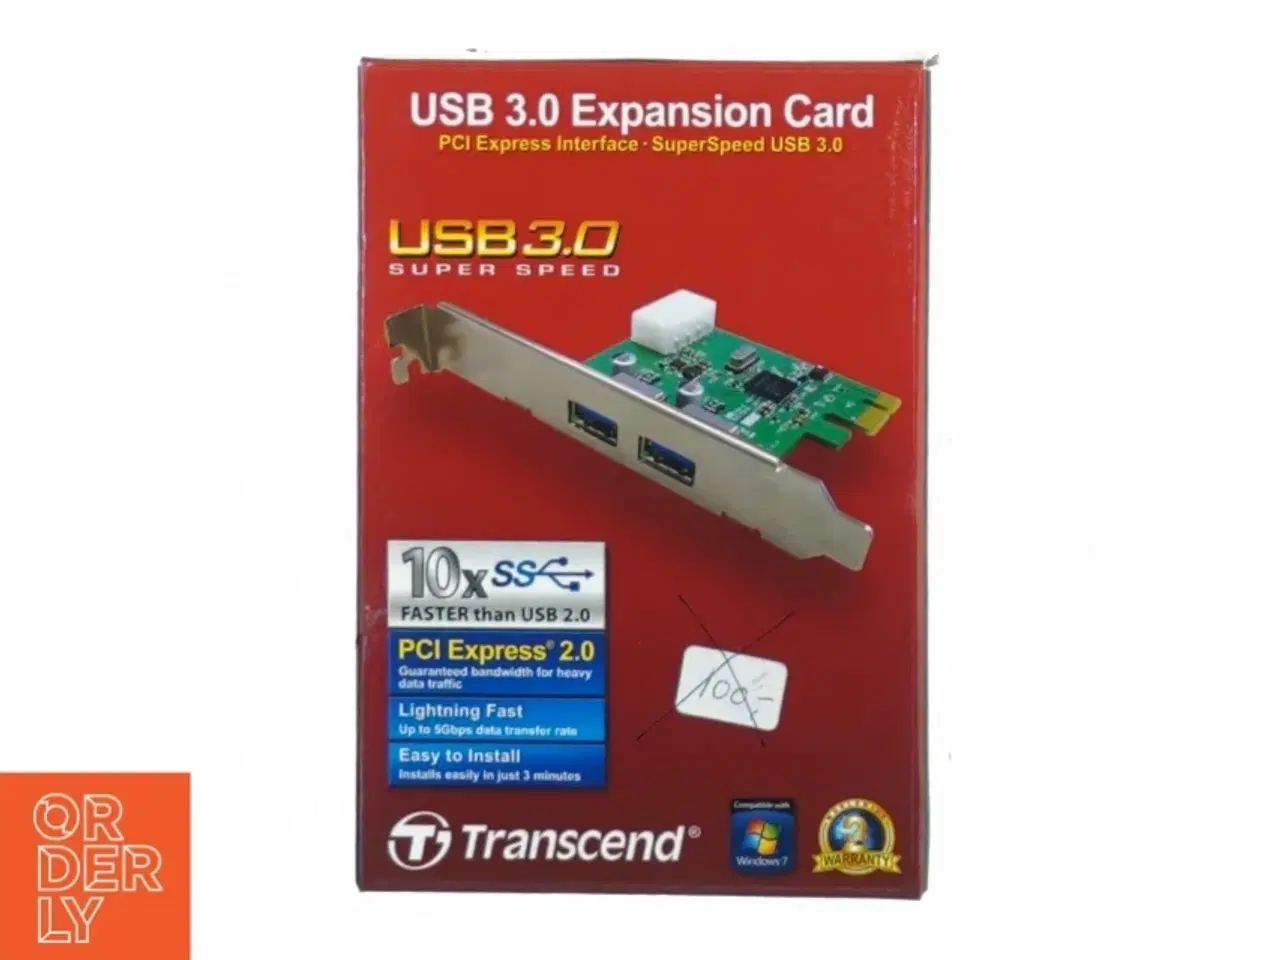 Billede 2 - USB 3.0 expansion card fra Transcend (str. 15 x 10 cm)